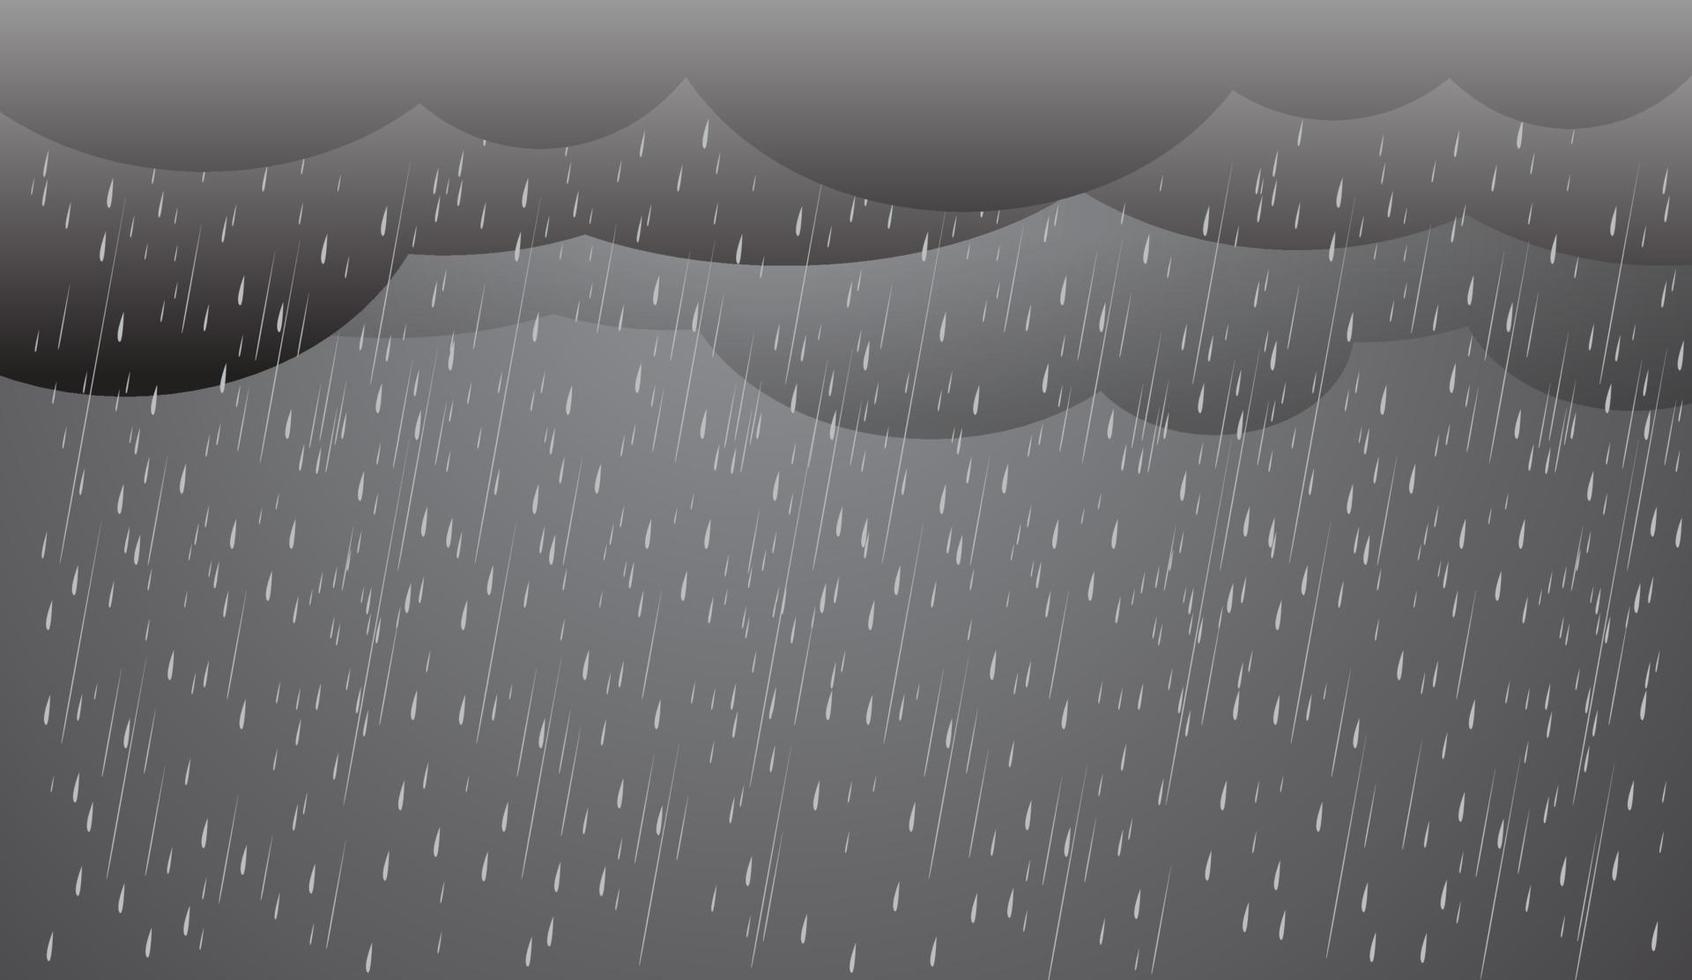 zware regen in donkere hemel, regenseizoen, wolken en storm, weer natuur achtergrond, overstroming natuurramp, vectorillustratie. vector